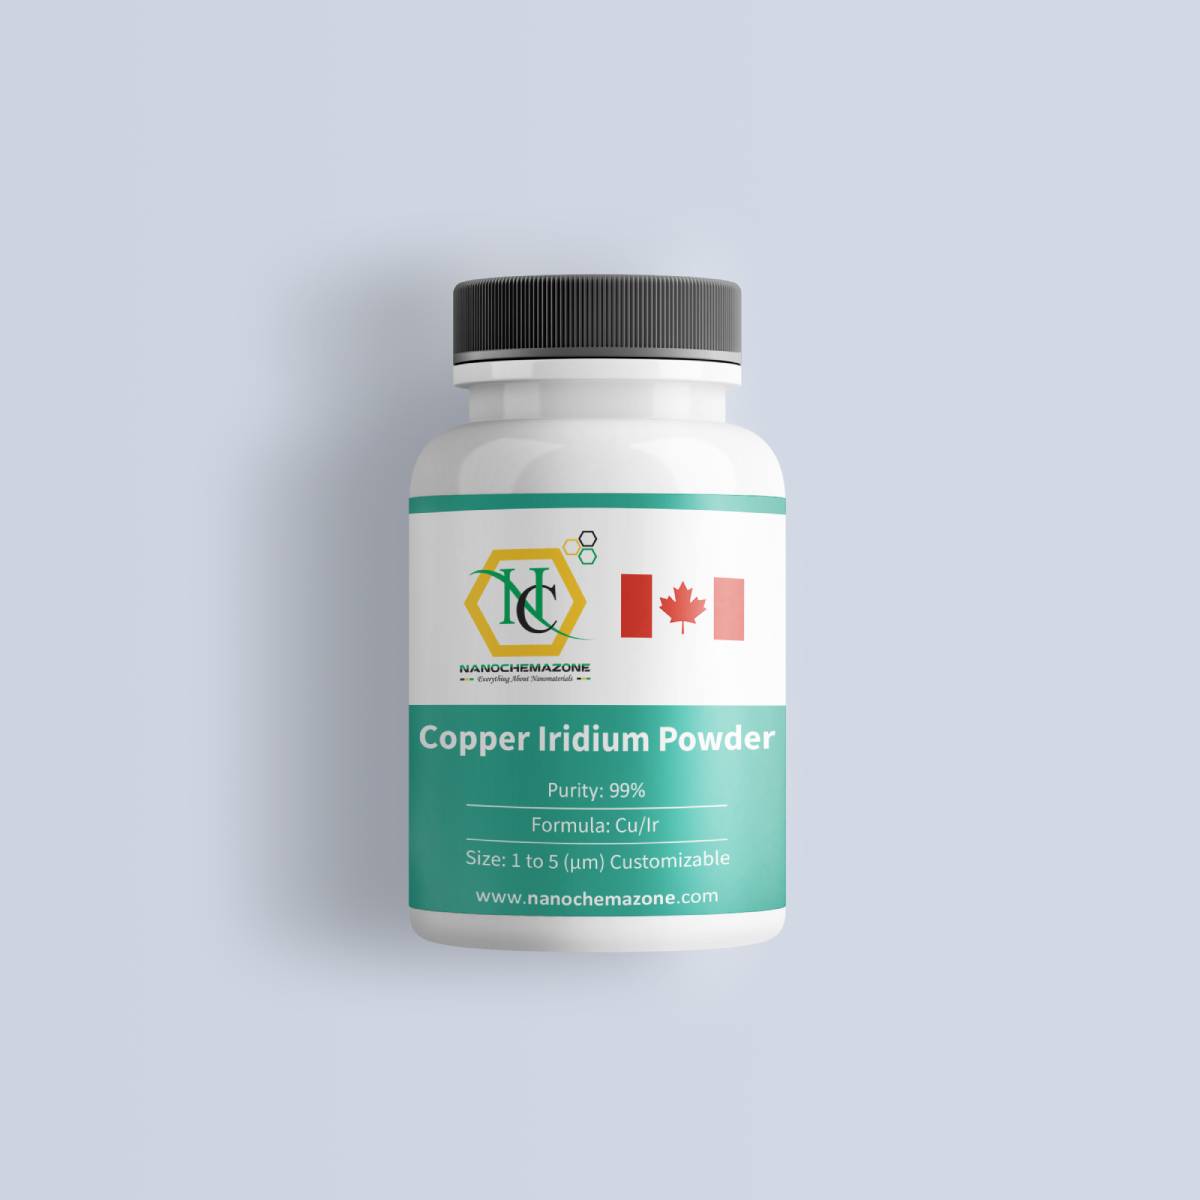 Copper Iridium Powder